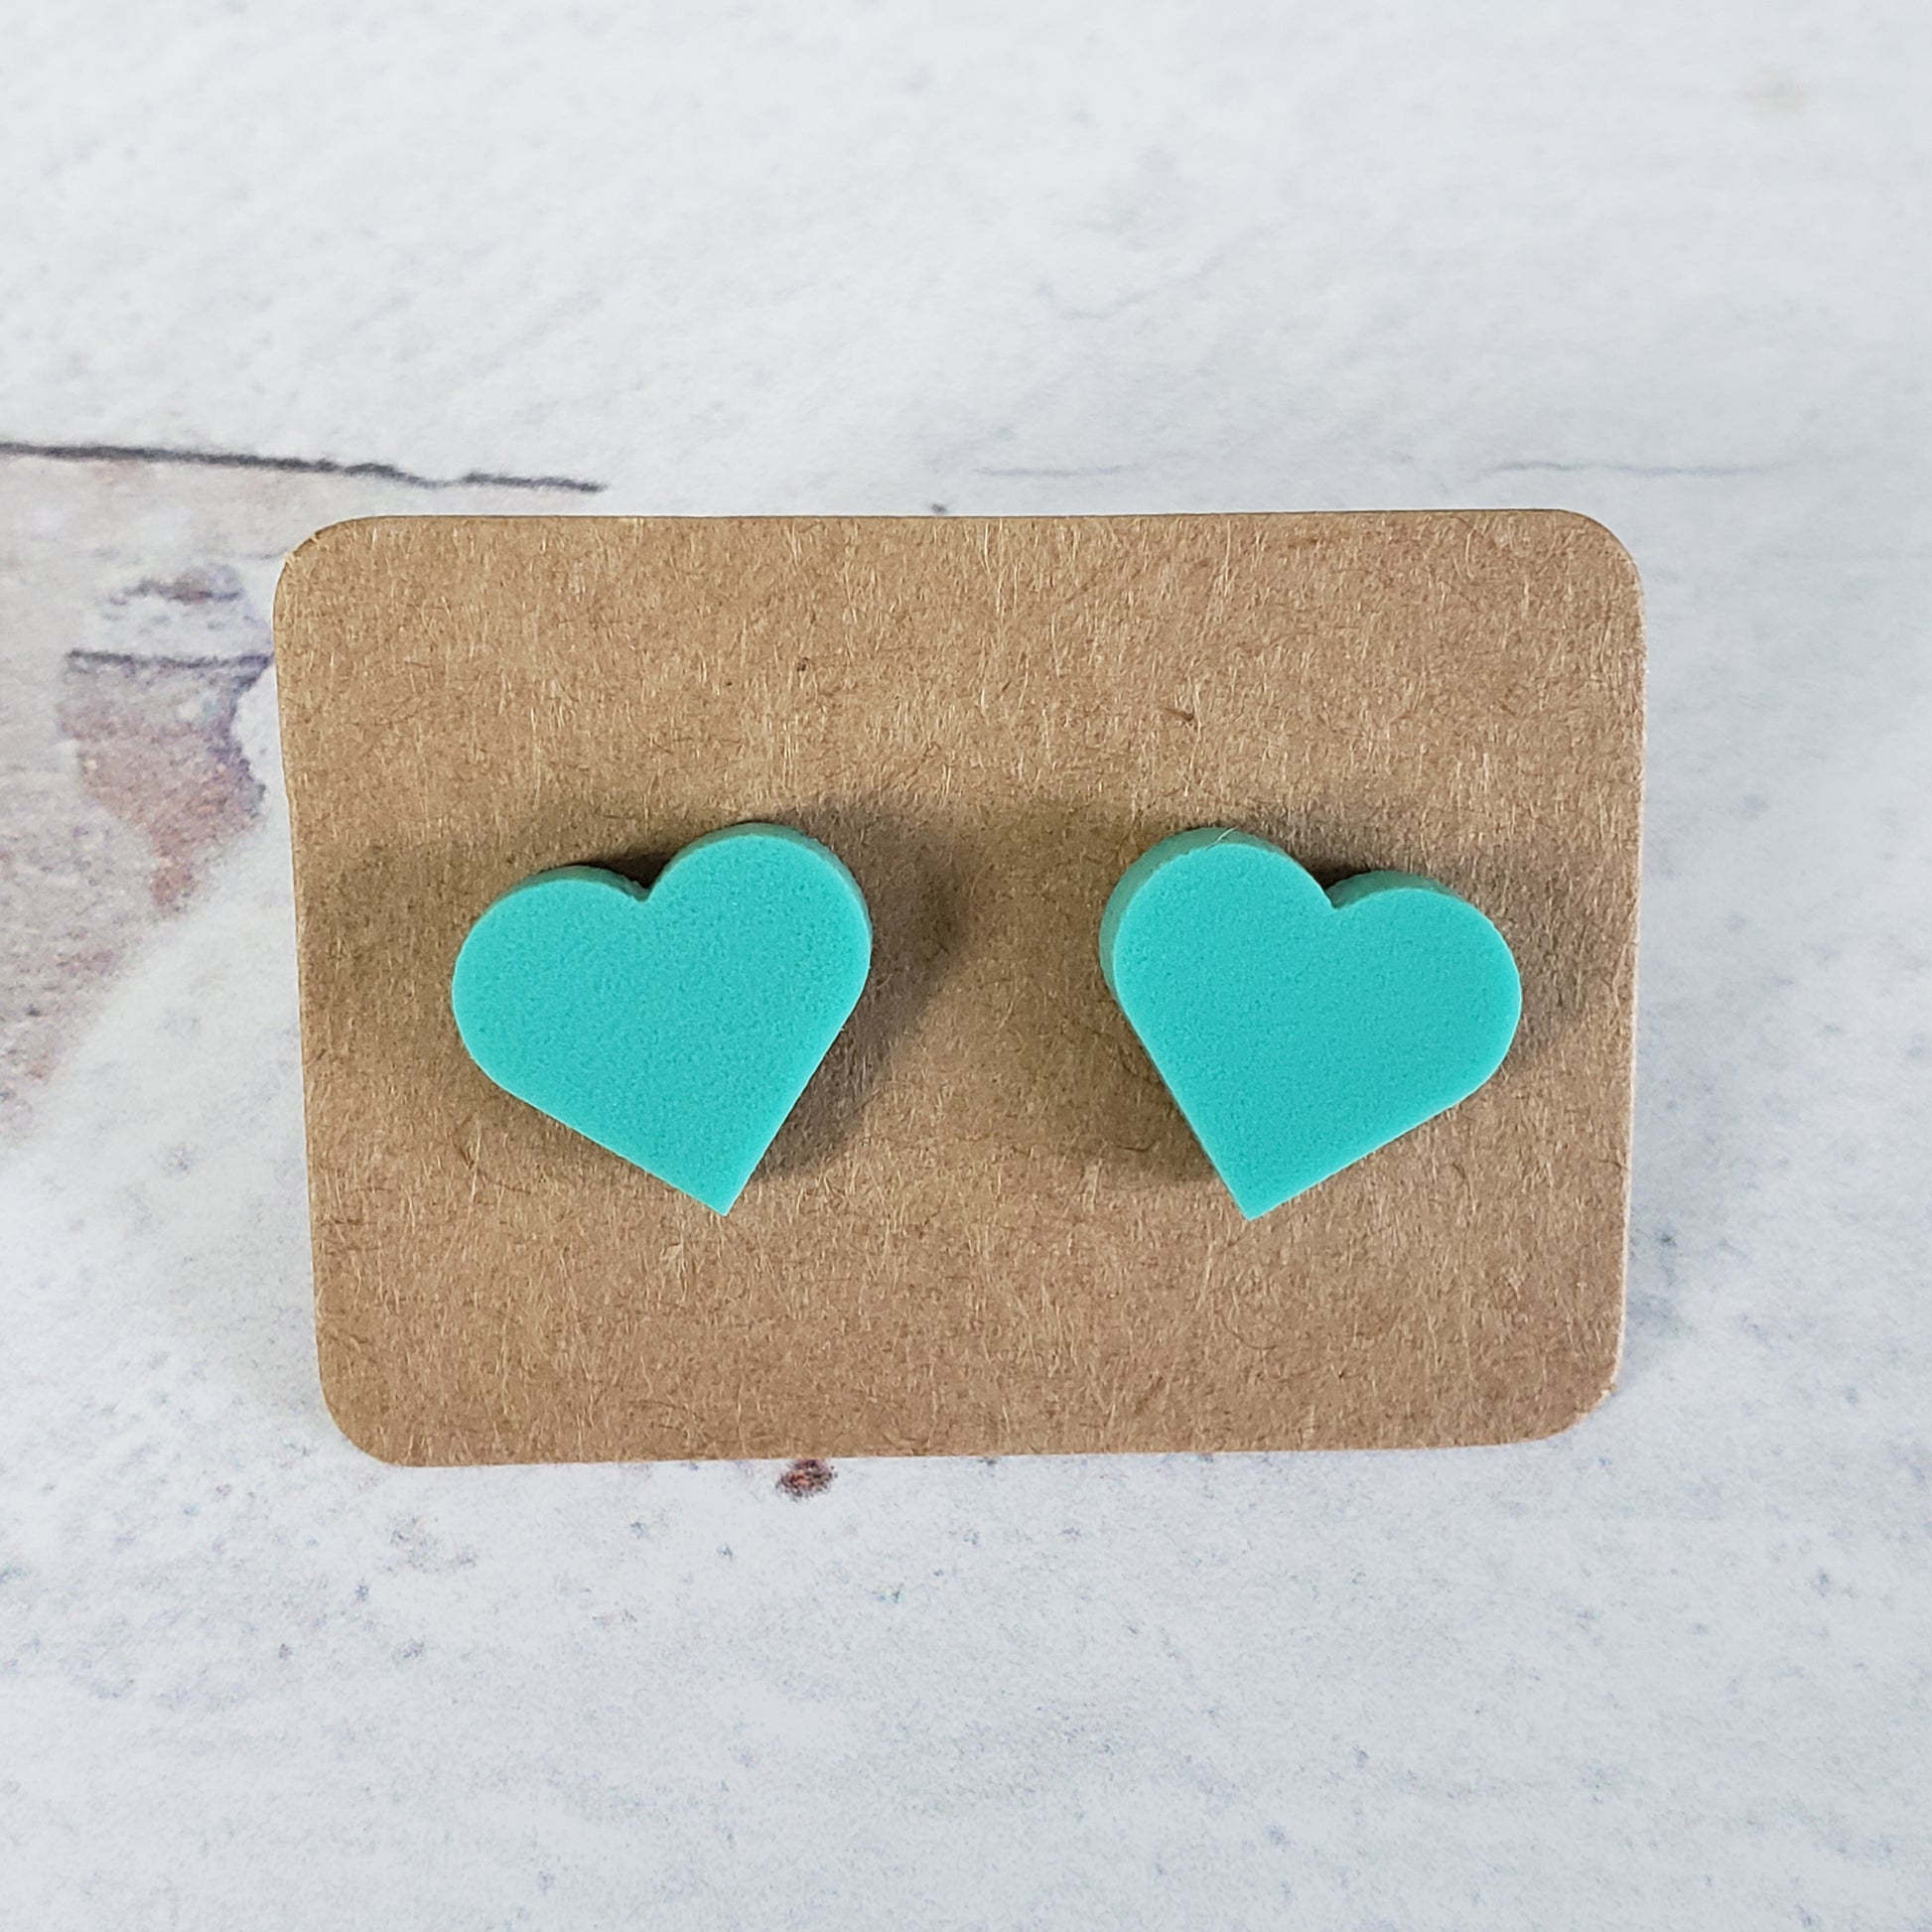 Matte mint green heart shaped stud earrings.